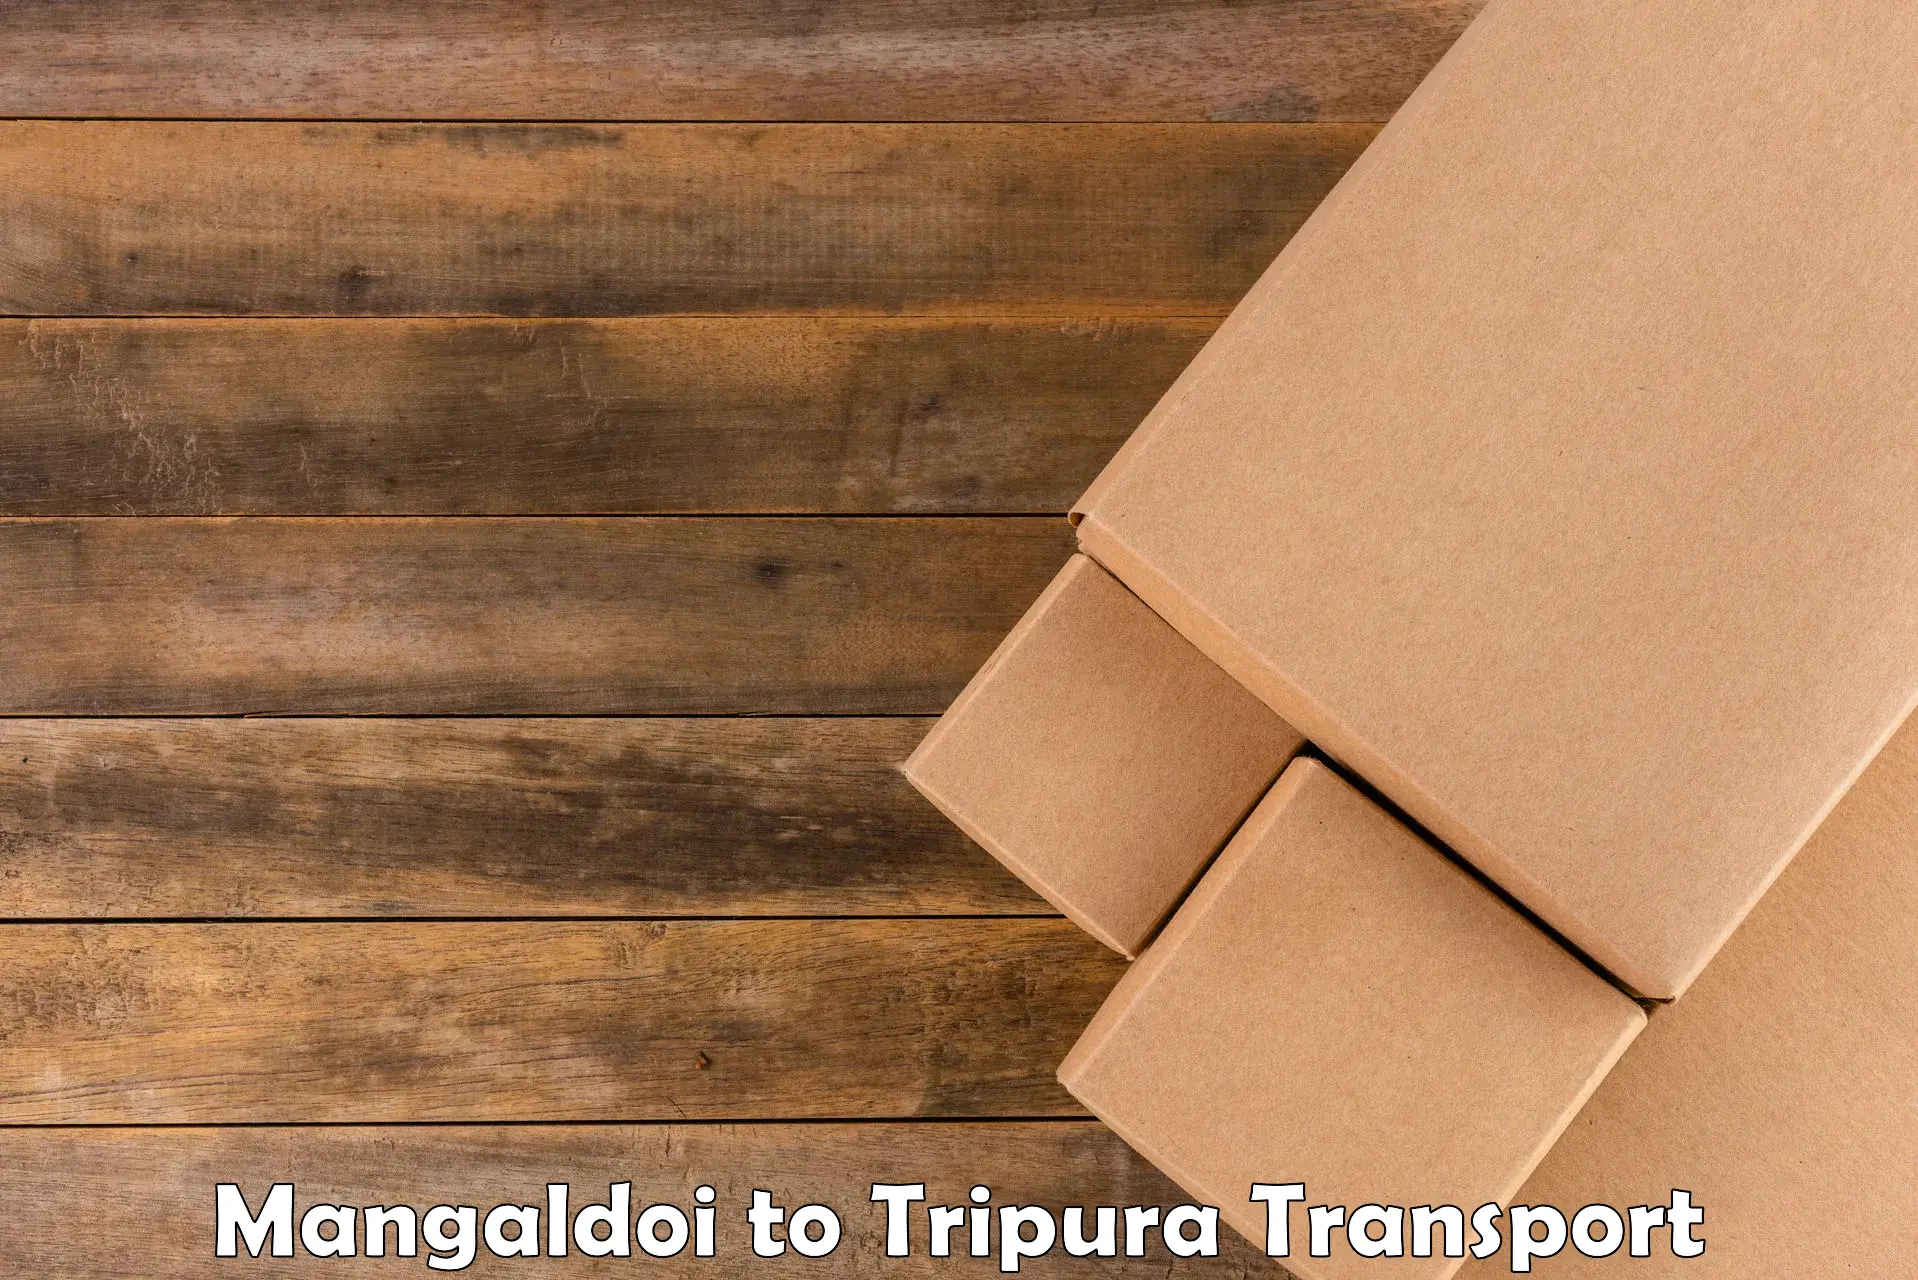 Container transport service in Mangaldoi to Amarpur